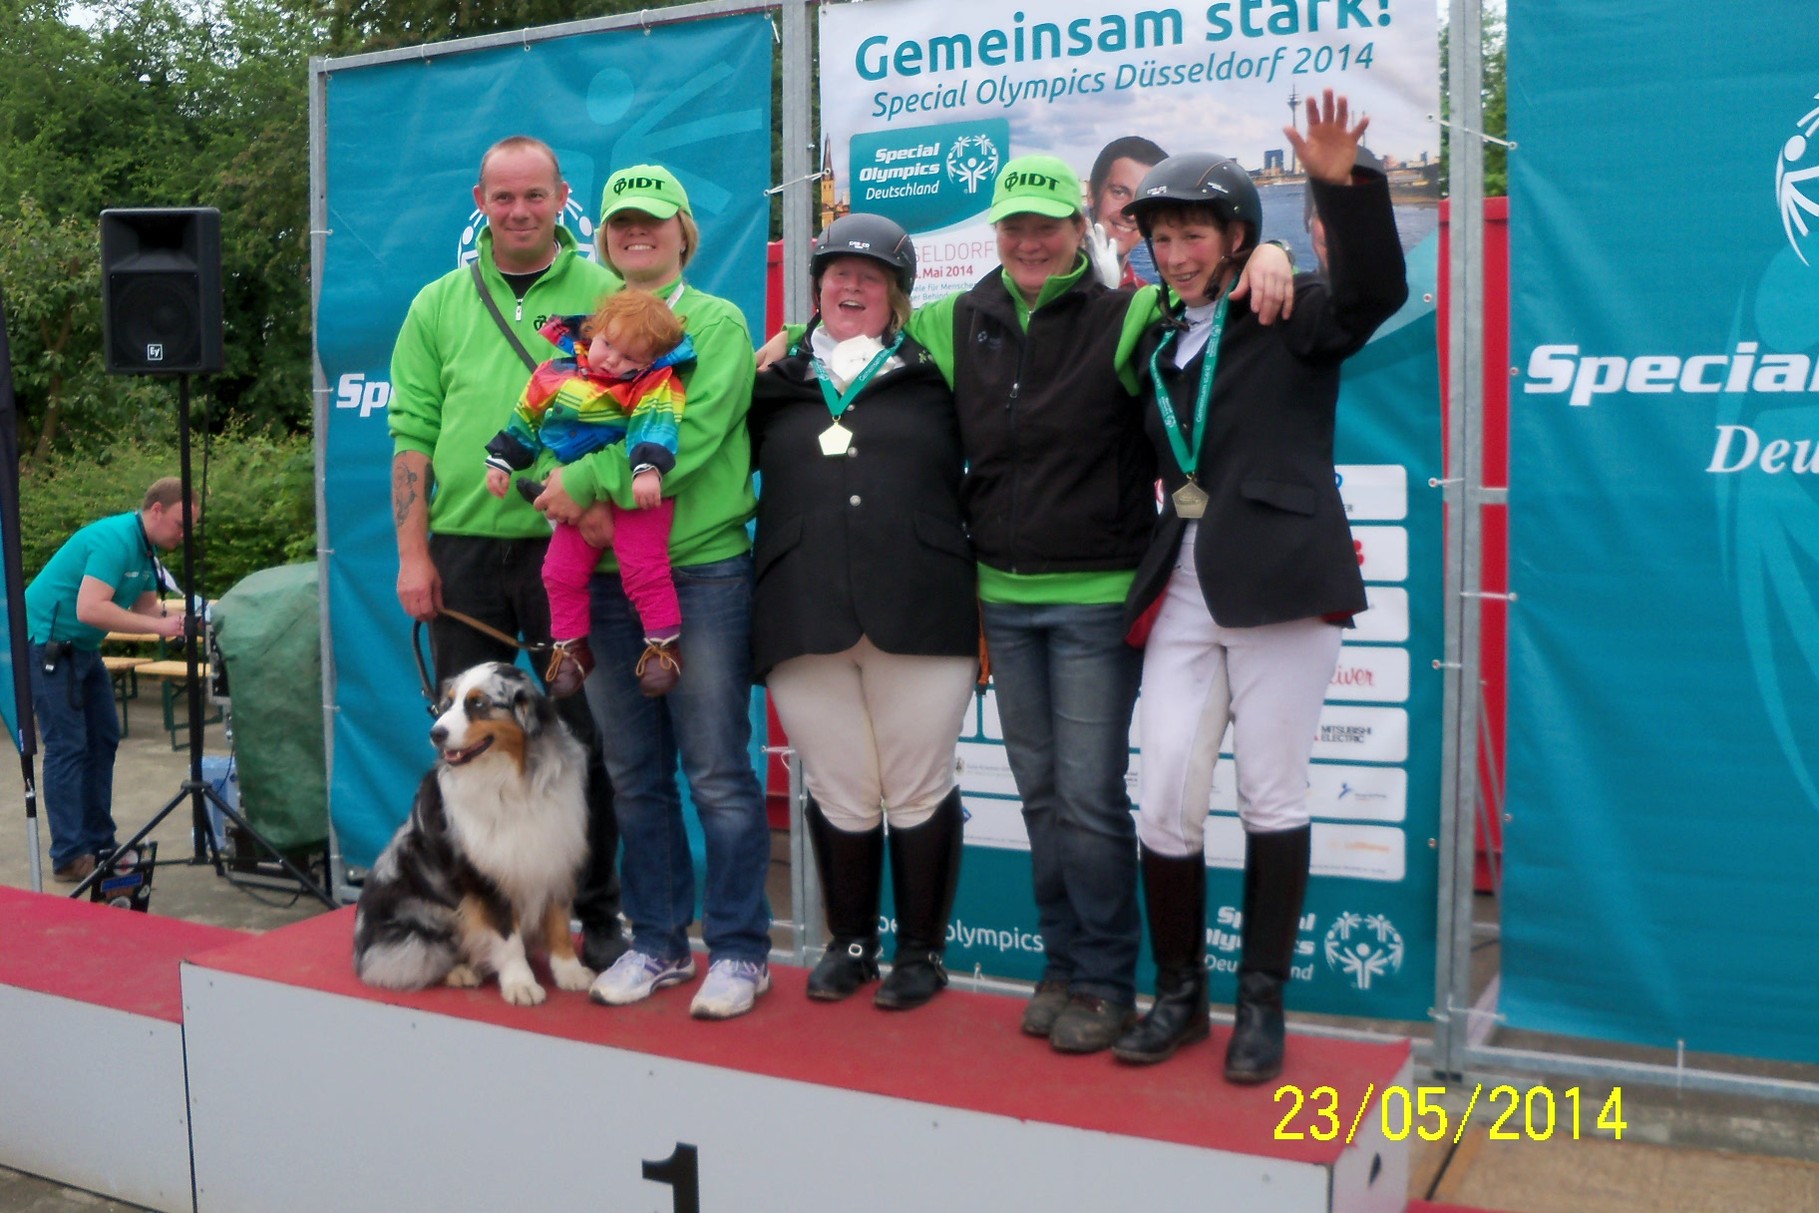 Juliane und Team bei der Siegerehrung  in Düsseldorf, Special Olympics 2014